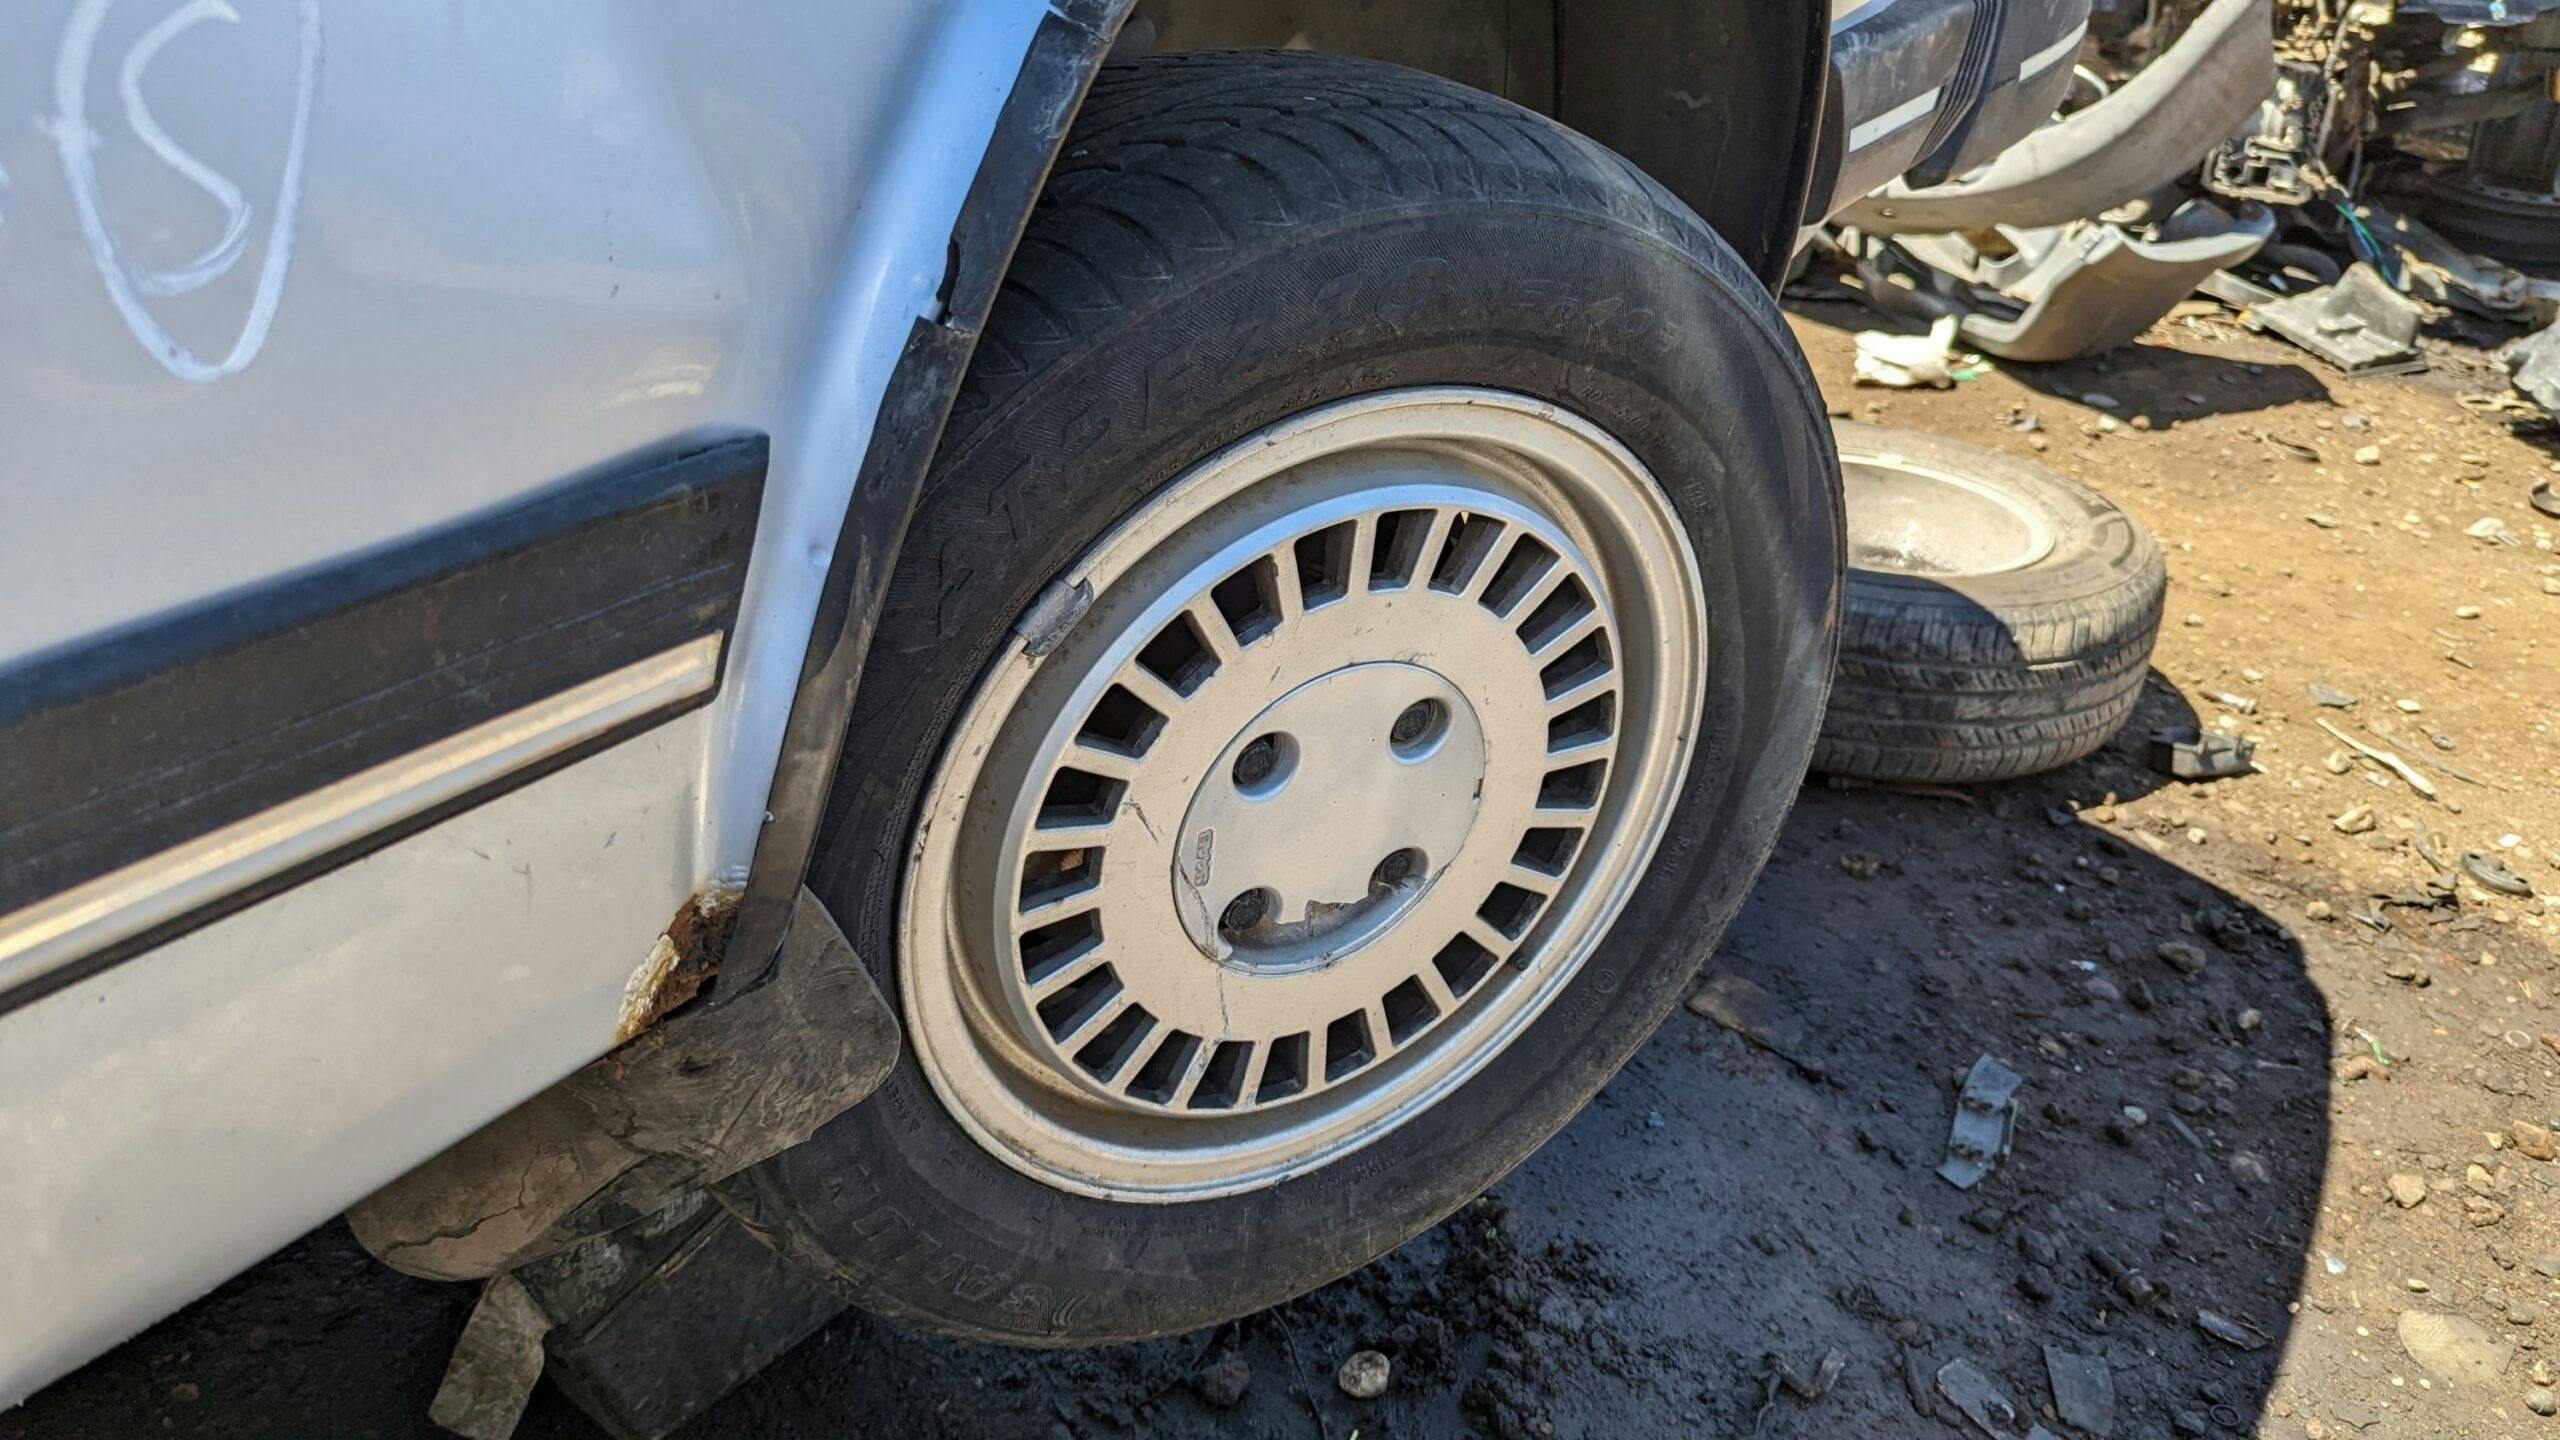 1986 Saab 900 S Sedan wheel tire